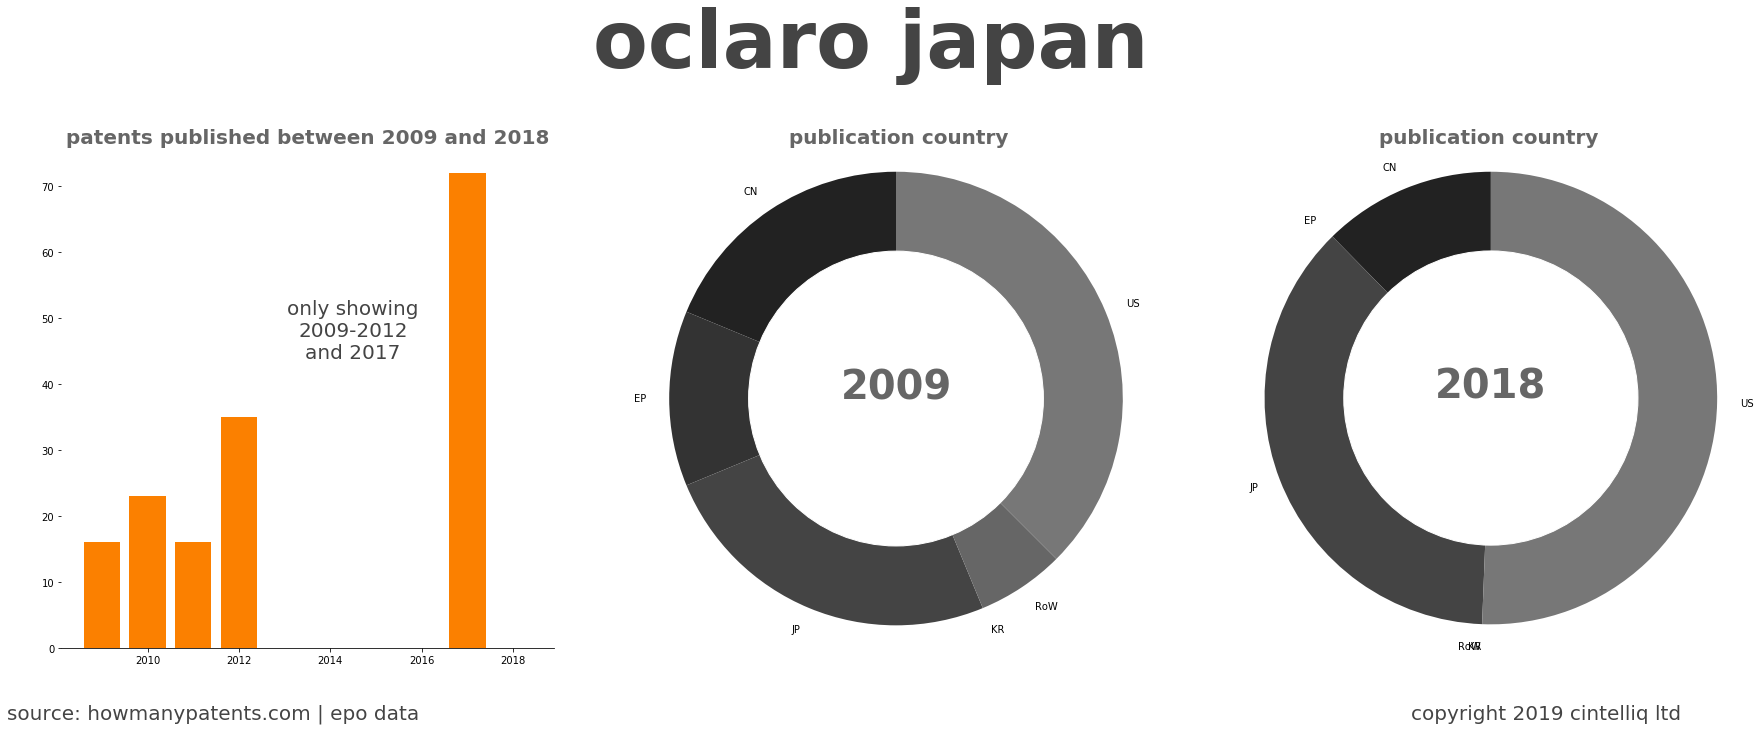 summary of patents for Oclaro Japan